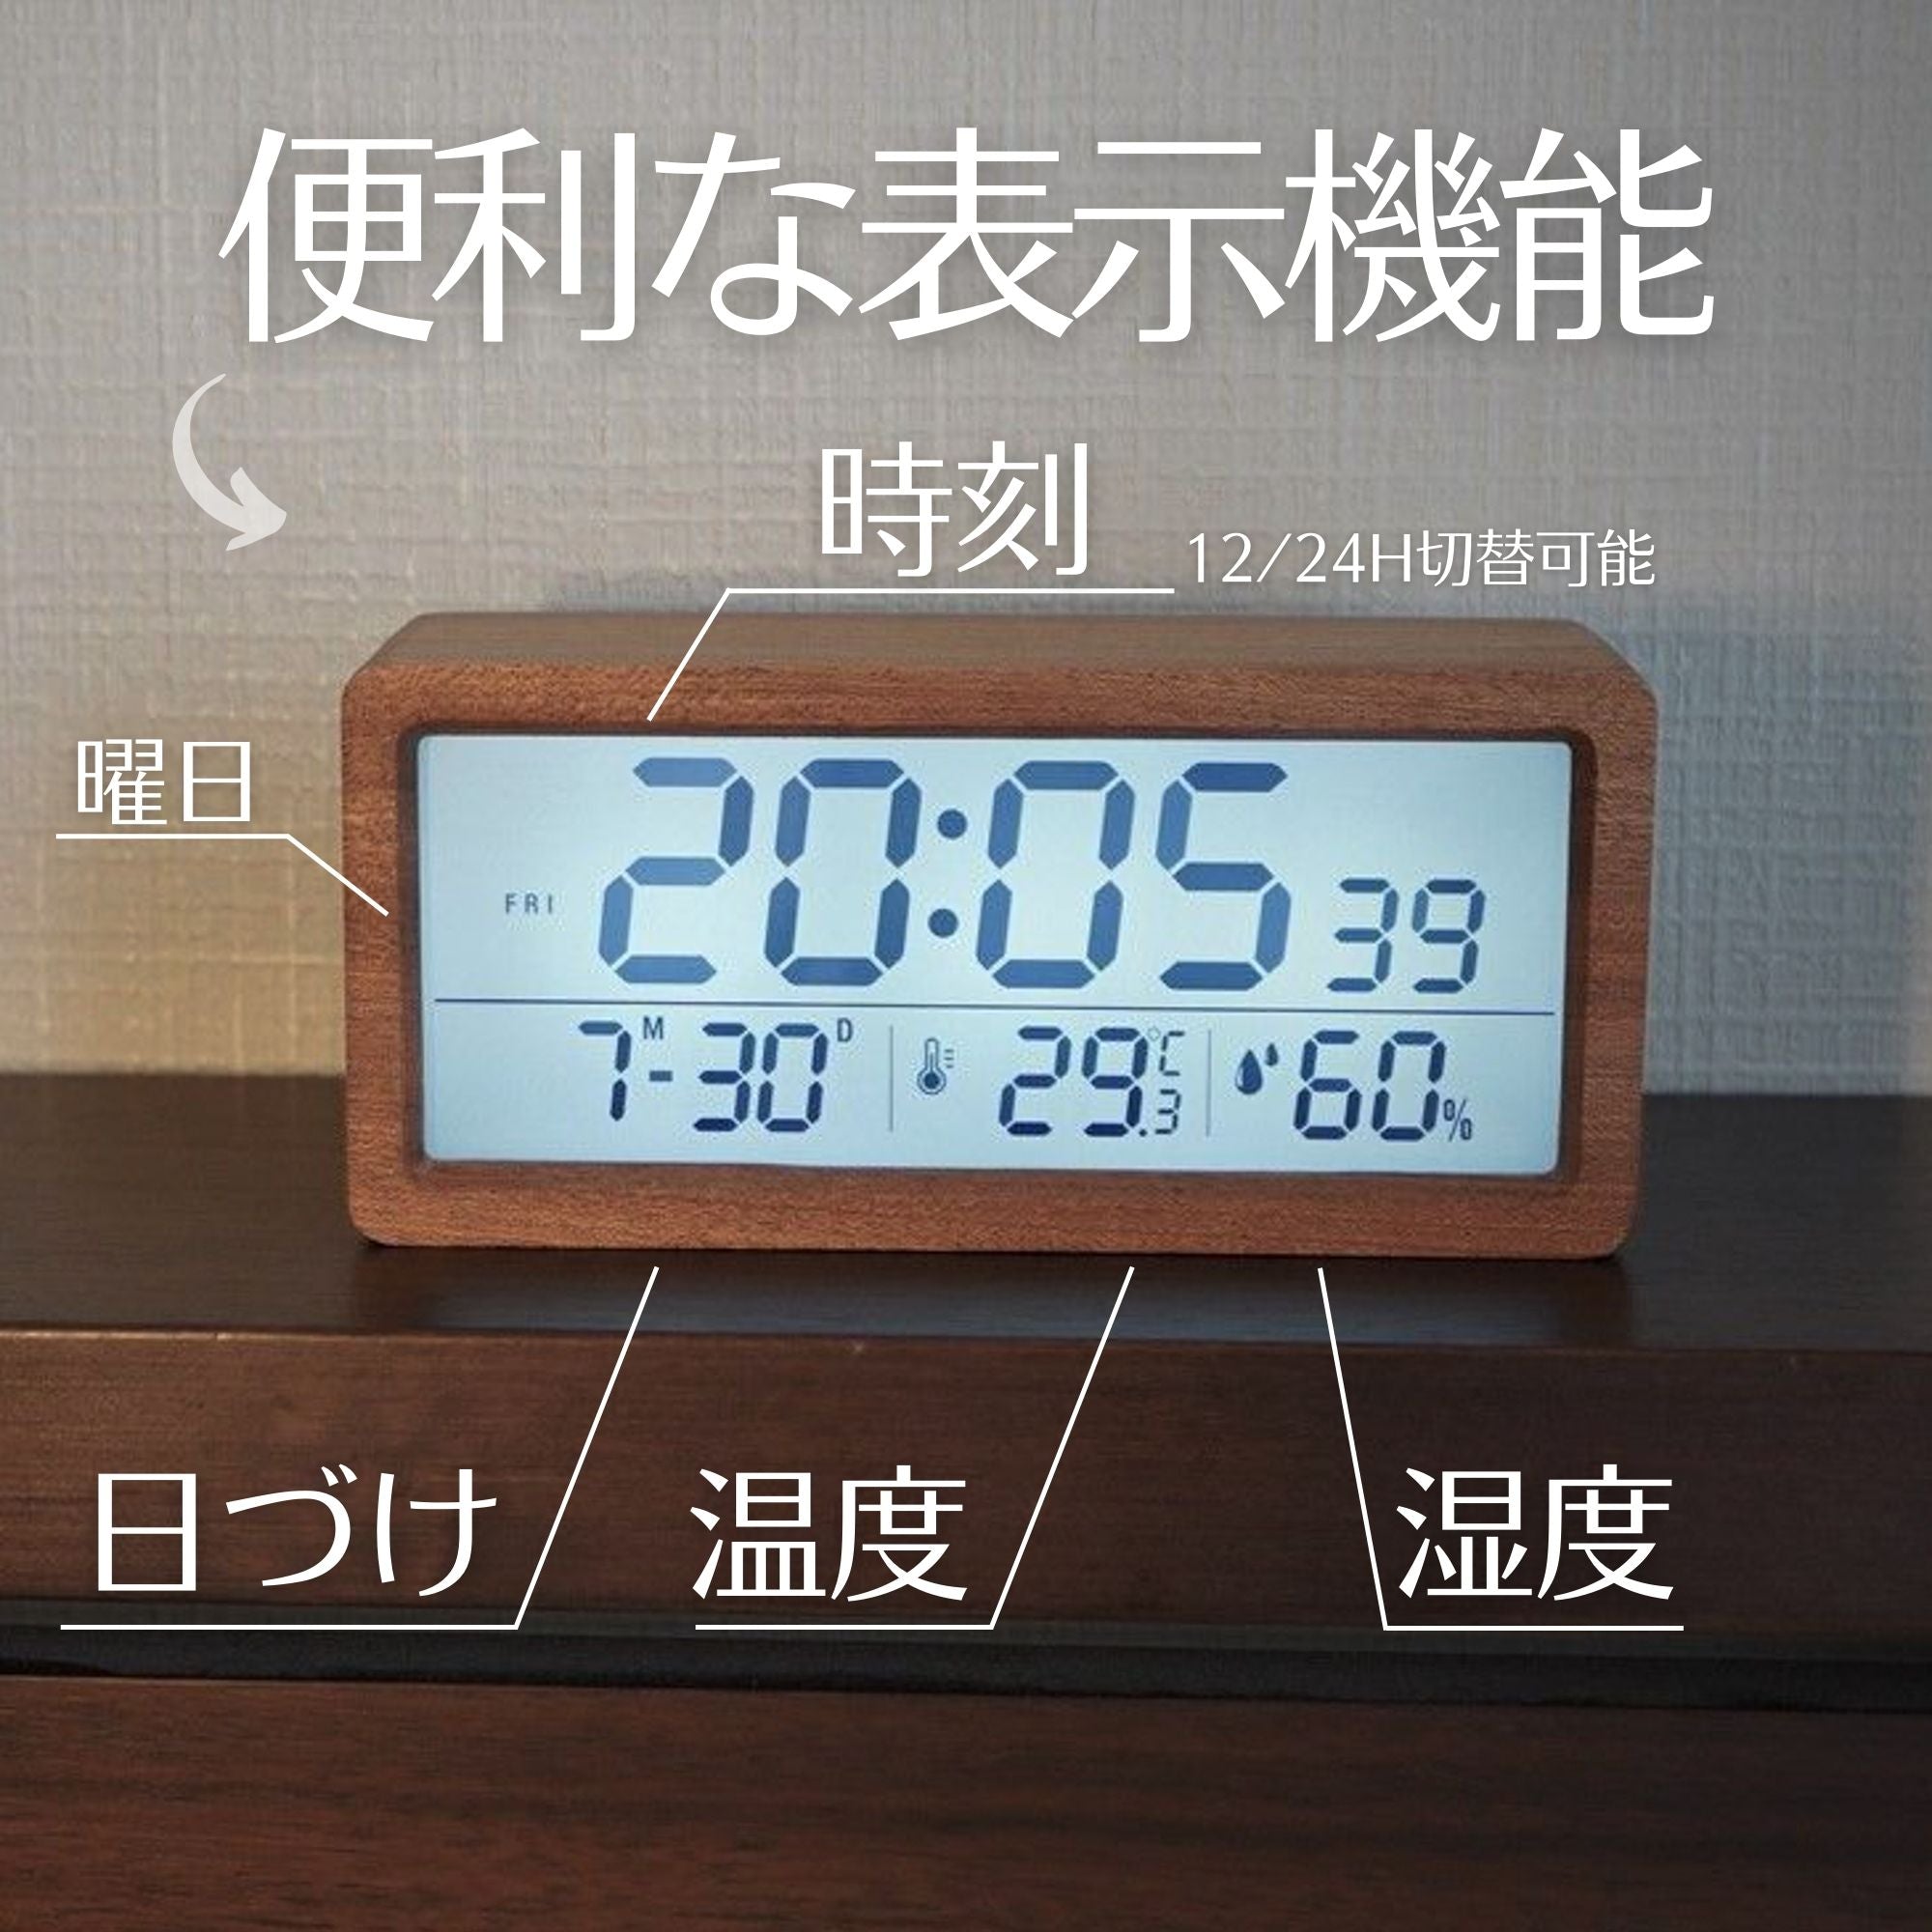 天然木製 デジタル 目覚まし 置き時計 室温 湿度表示 - インテリア時計